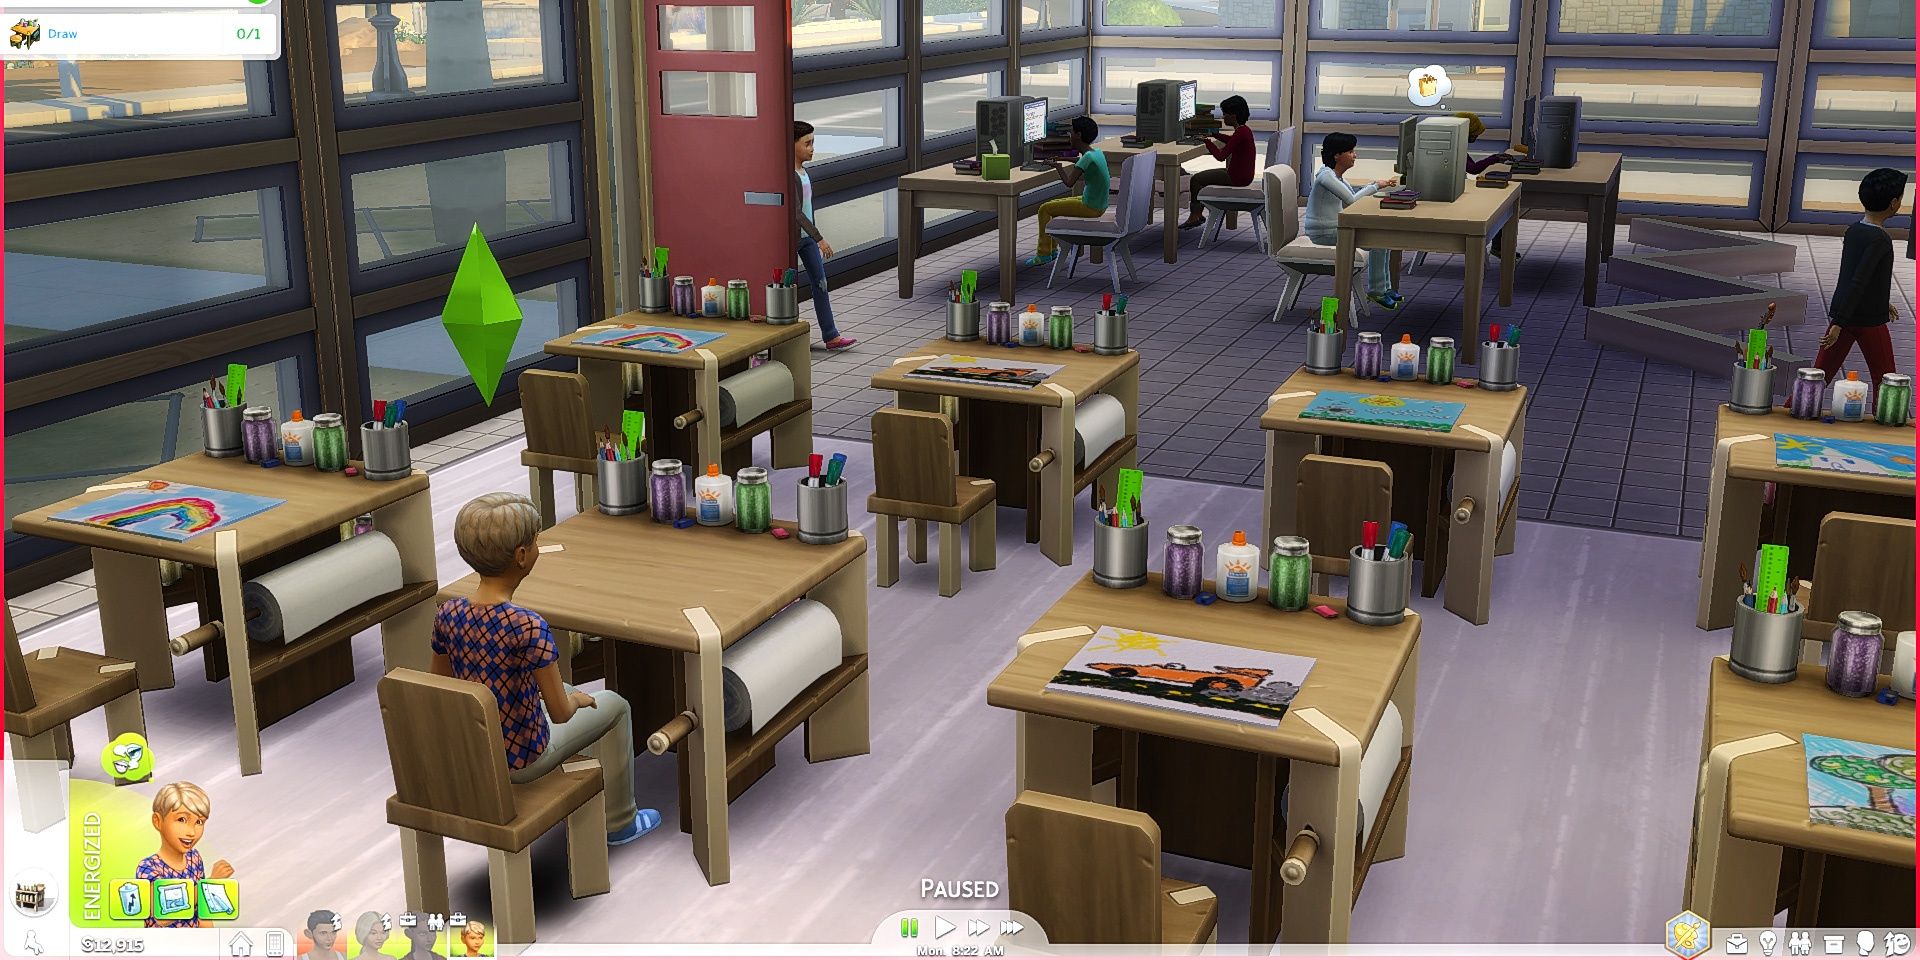 Children sitting at school desks in the Sims 4